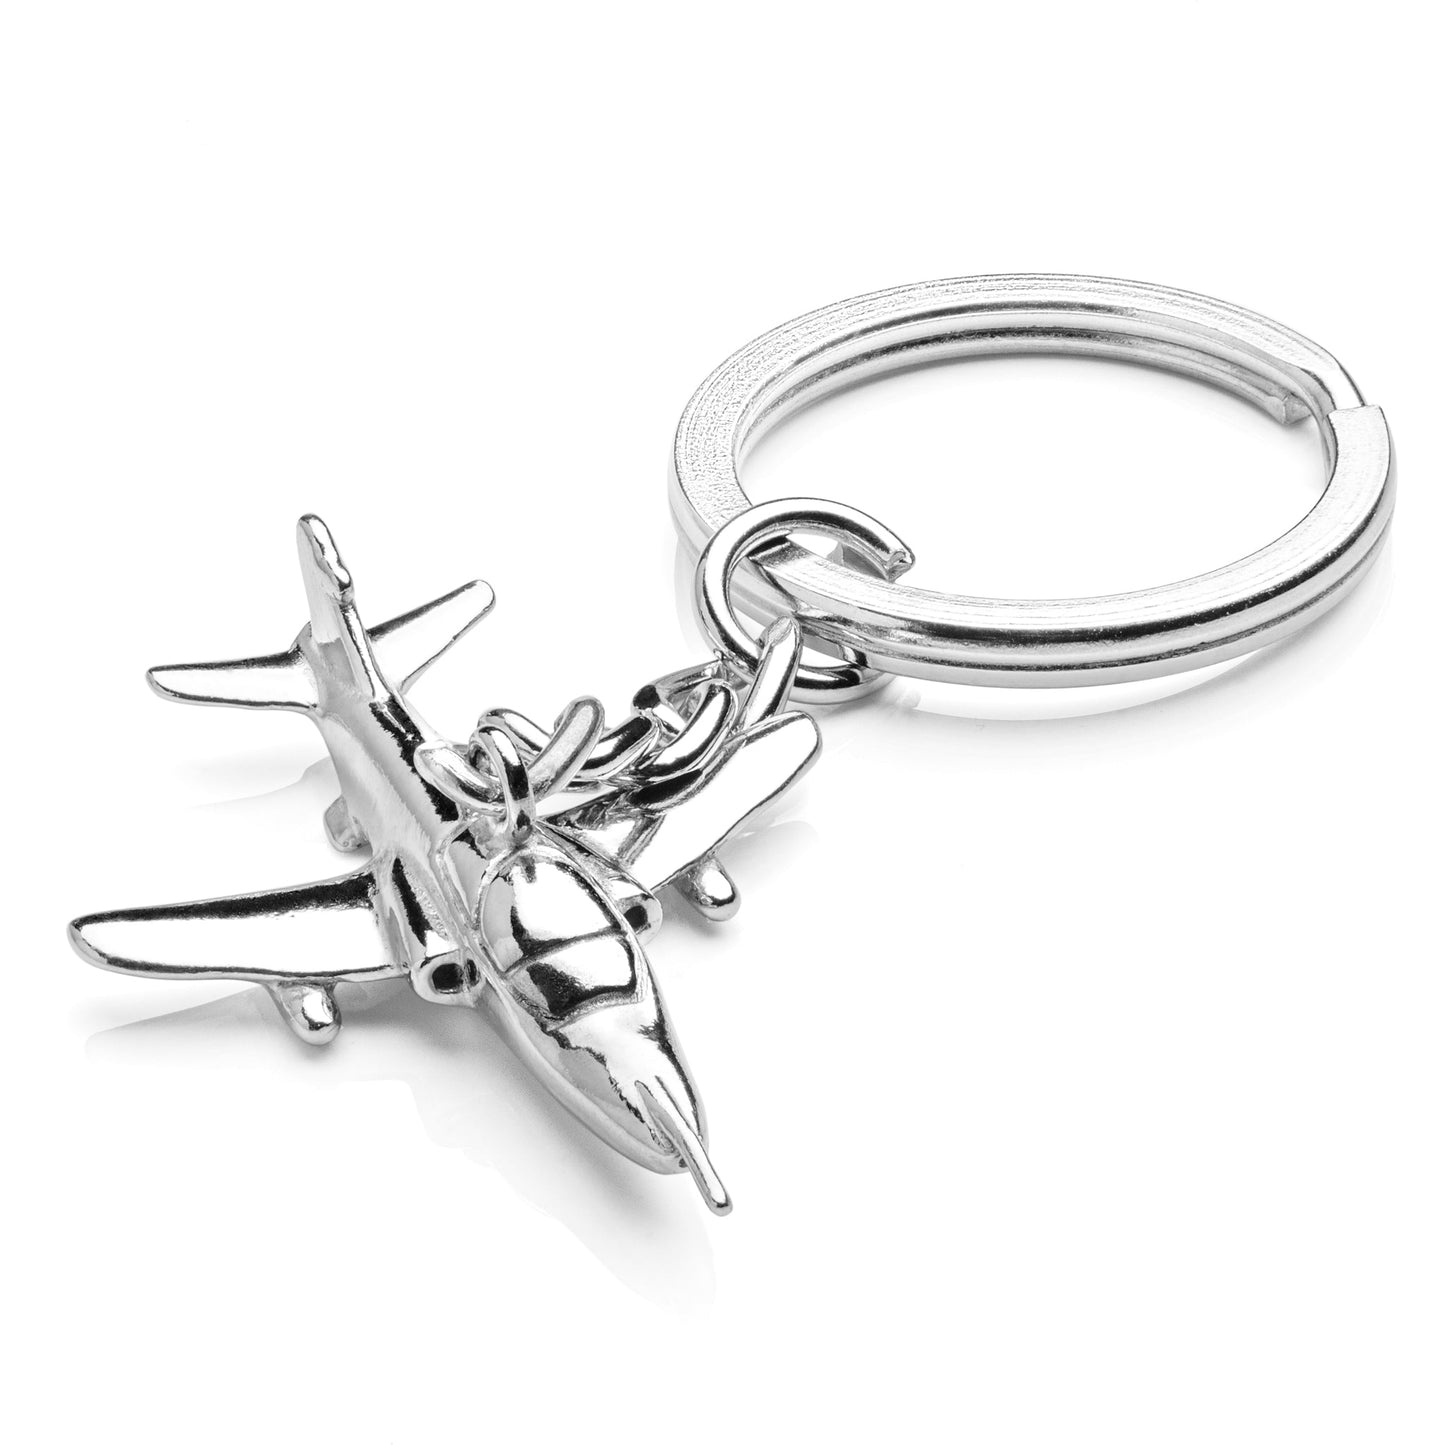  Hawk Air Force Keychain Gift